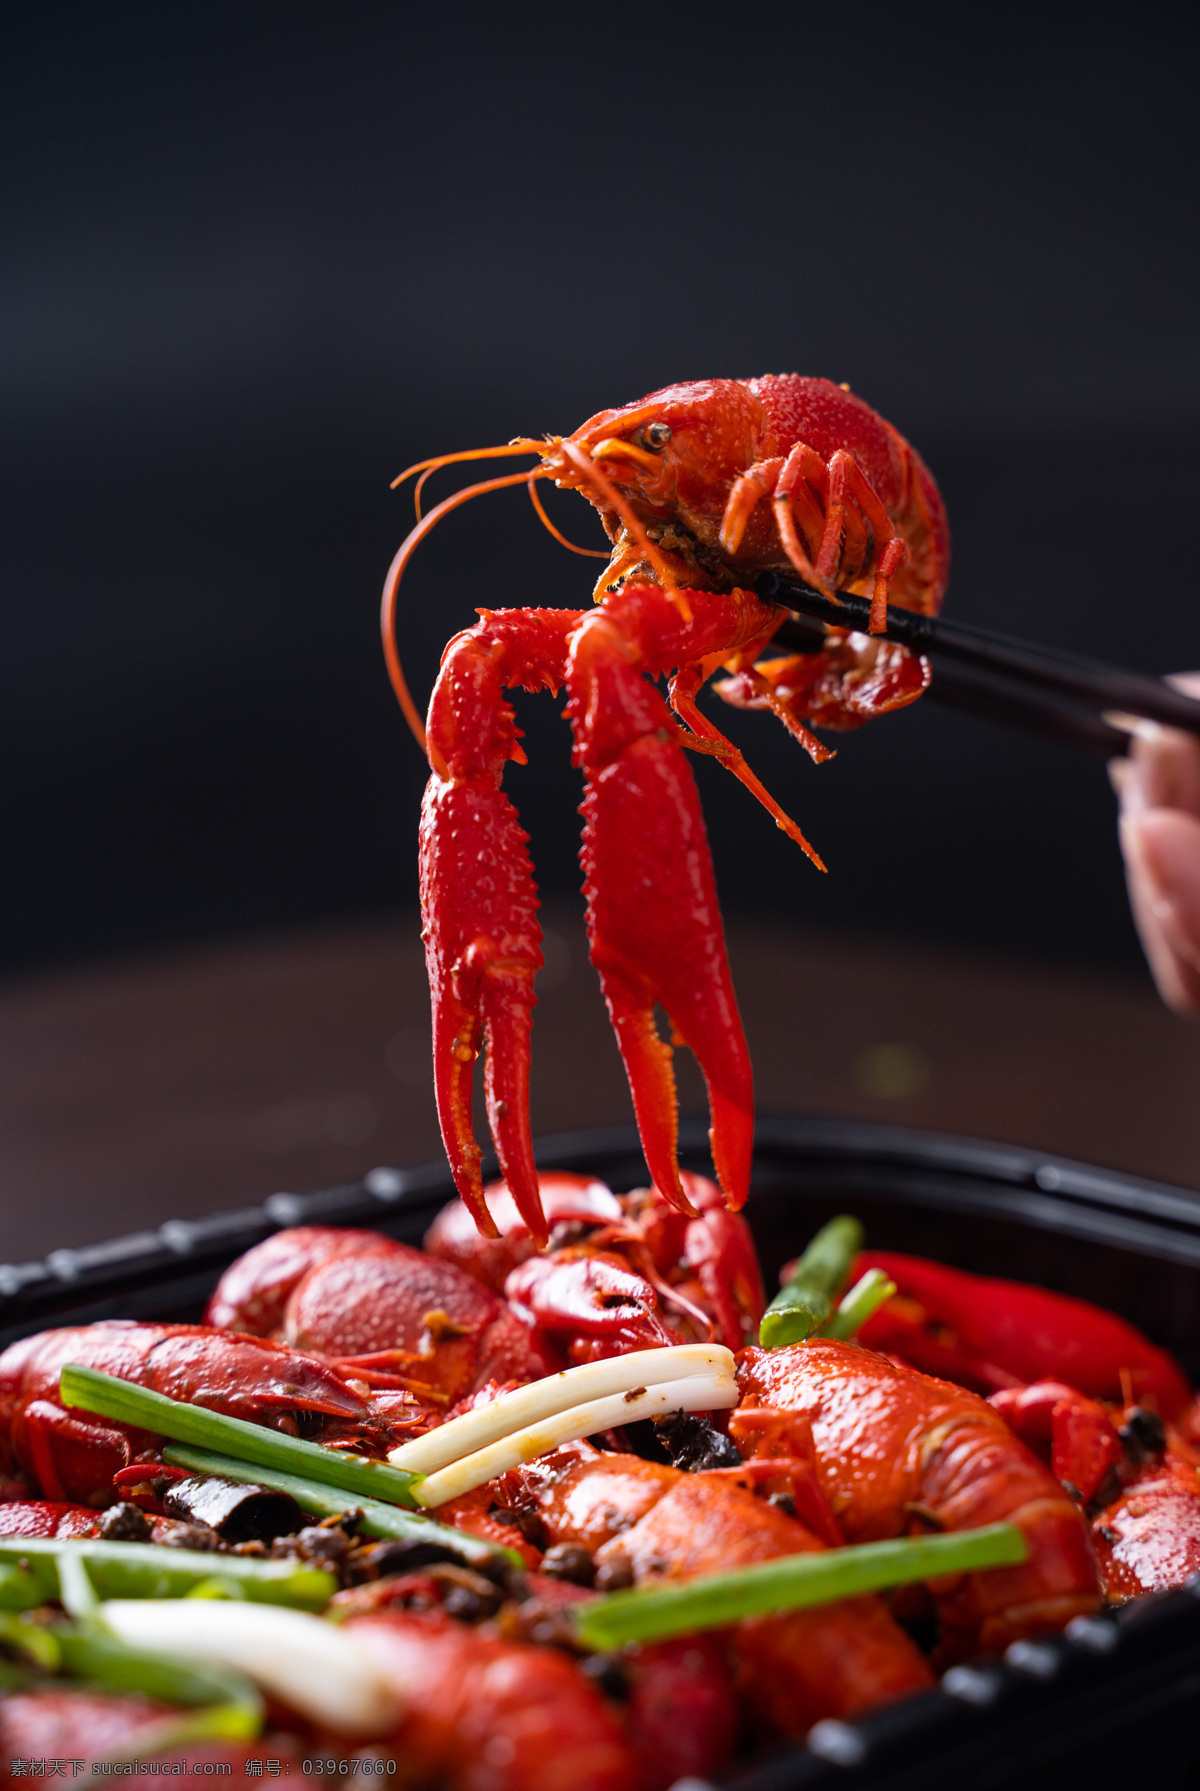 麻辣 龙虾 美食 食 材 海报 素材图片 麻辣龙虾 食材 食物 中药 水果 类 餐饮美食